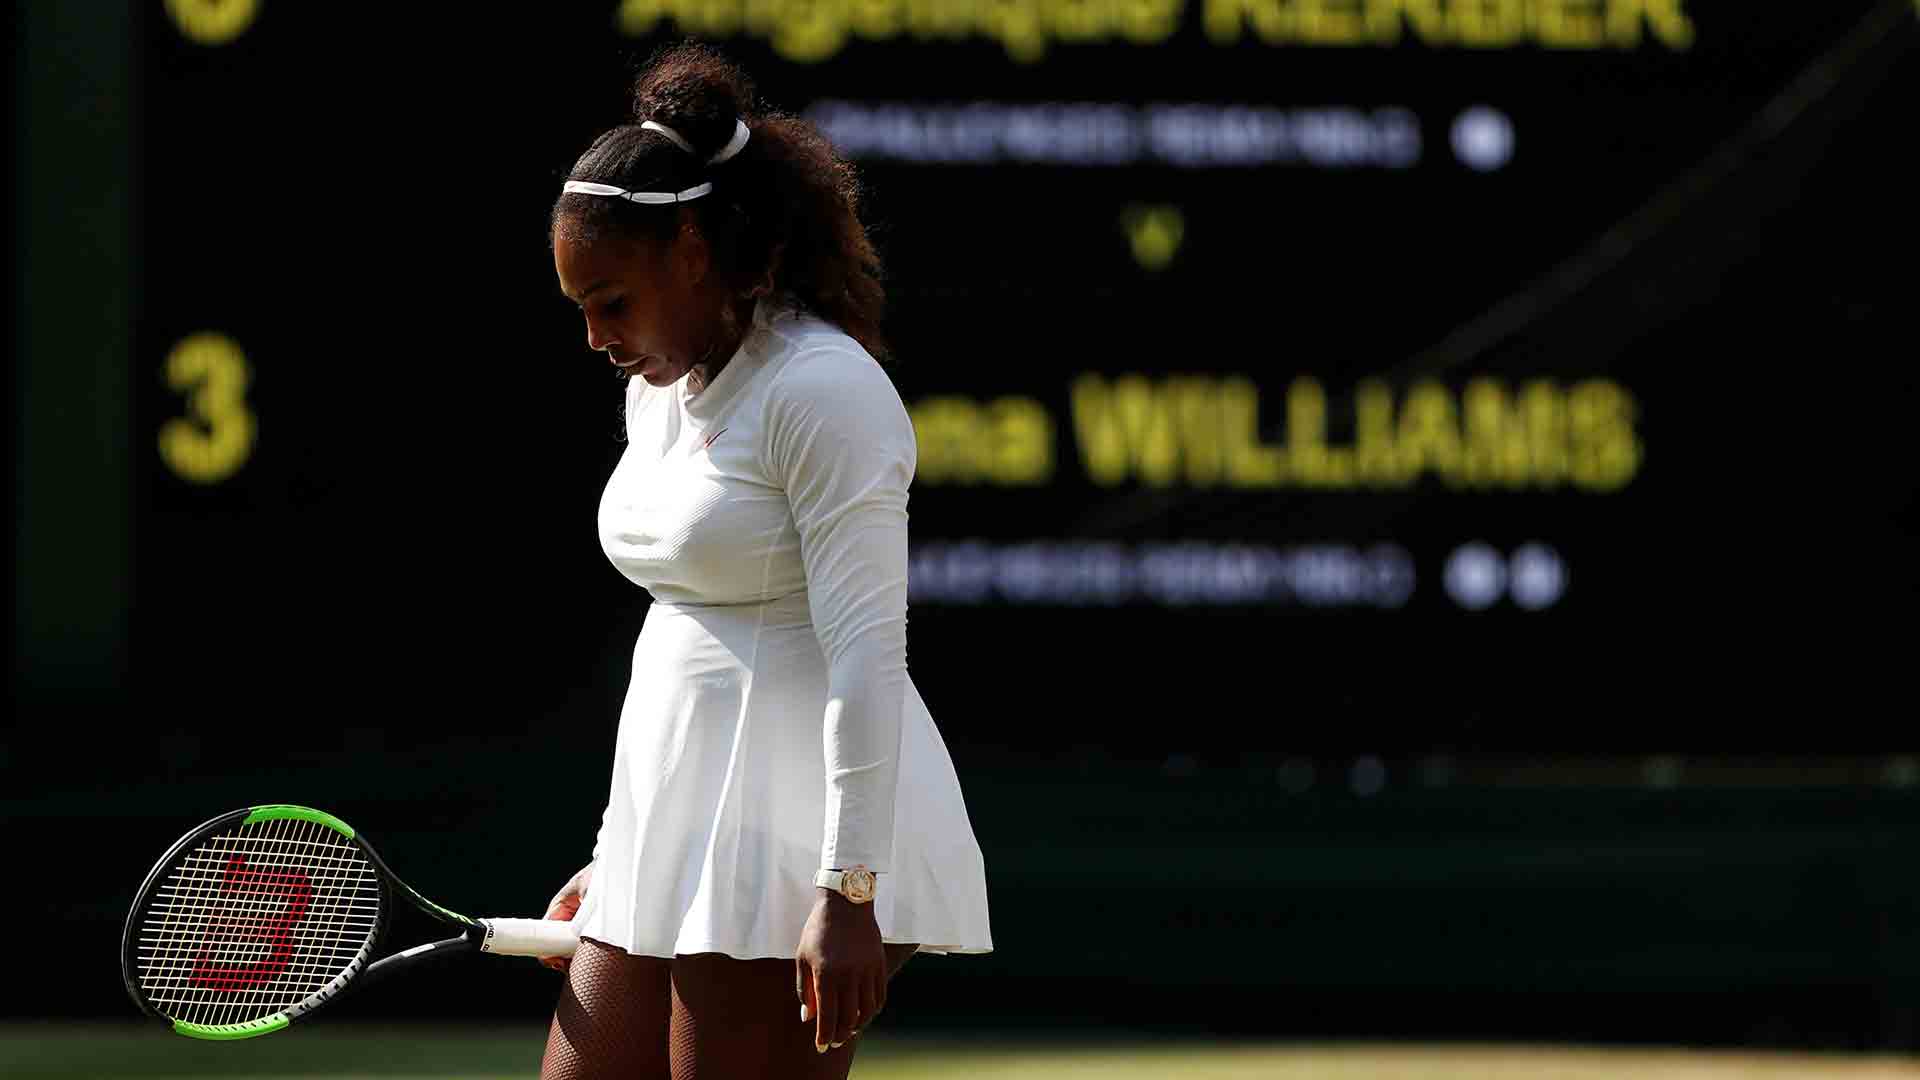 Serena Williams tras renunciar a jugar en Montreal: "Sentía que no estaba siendo una buena madre"